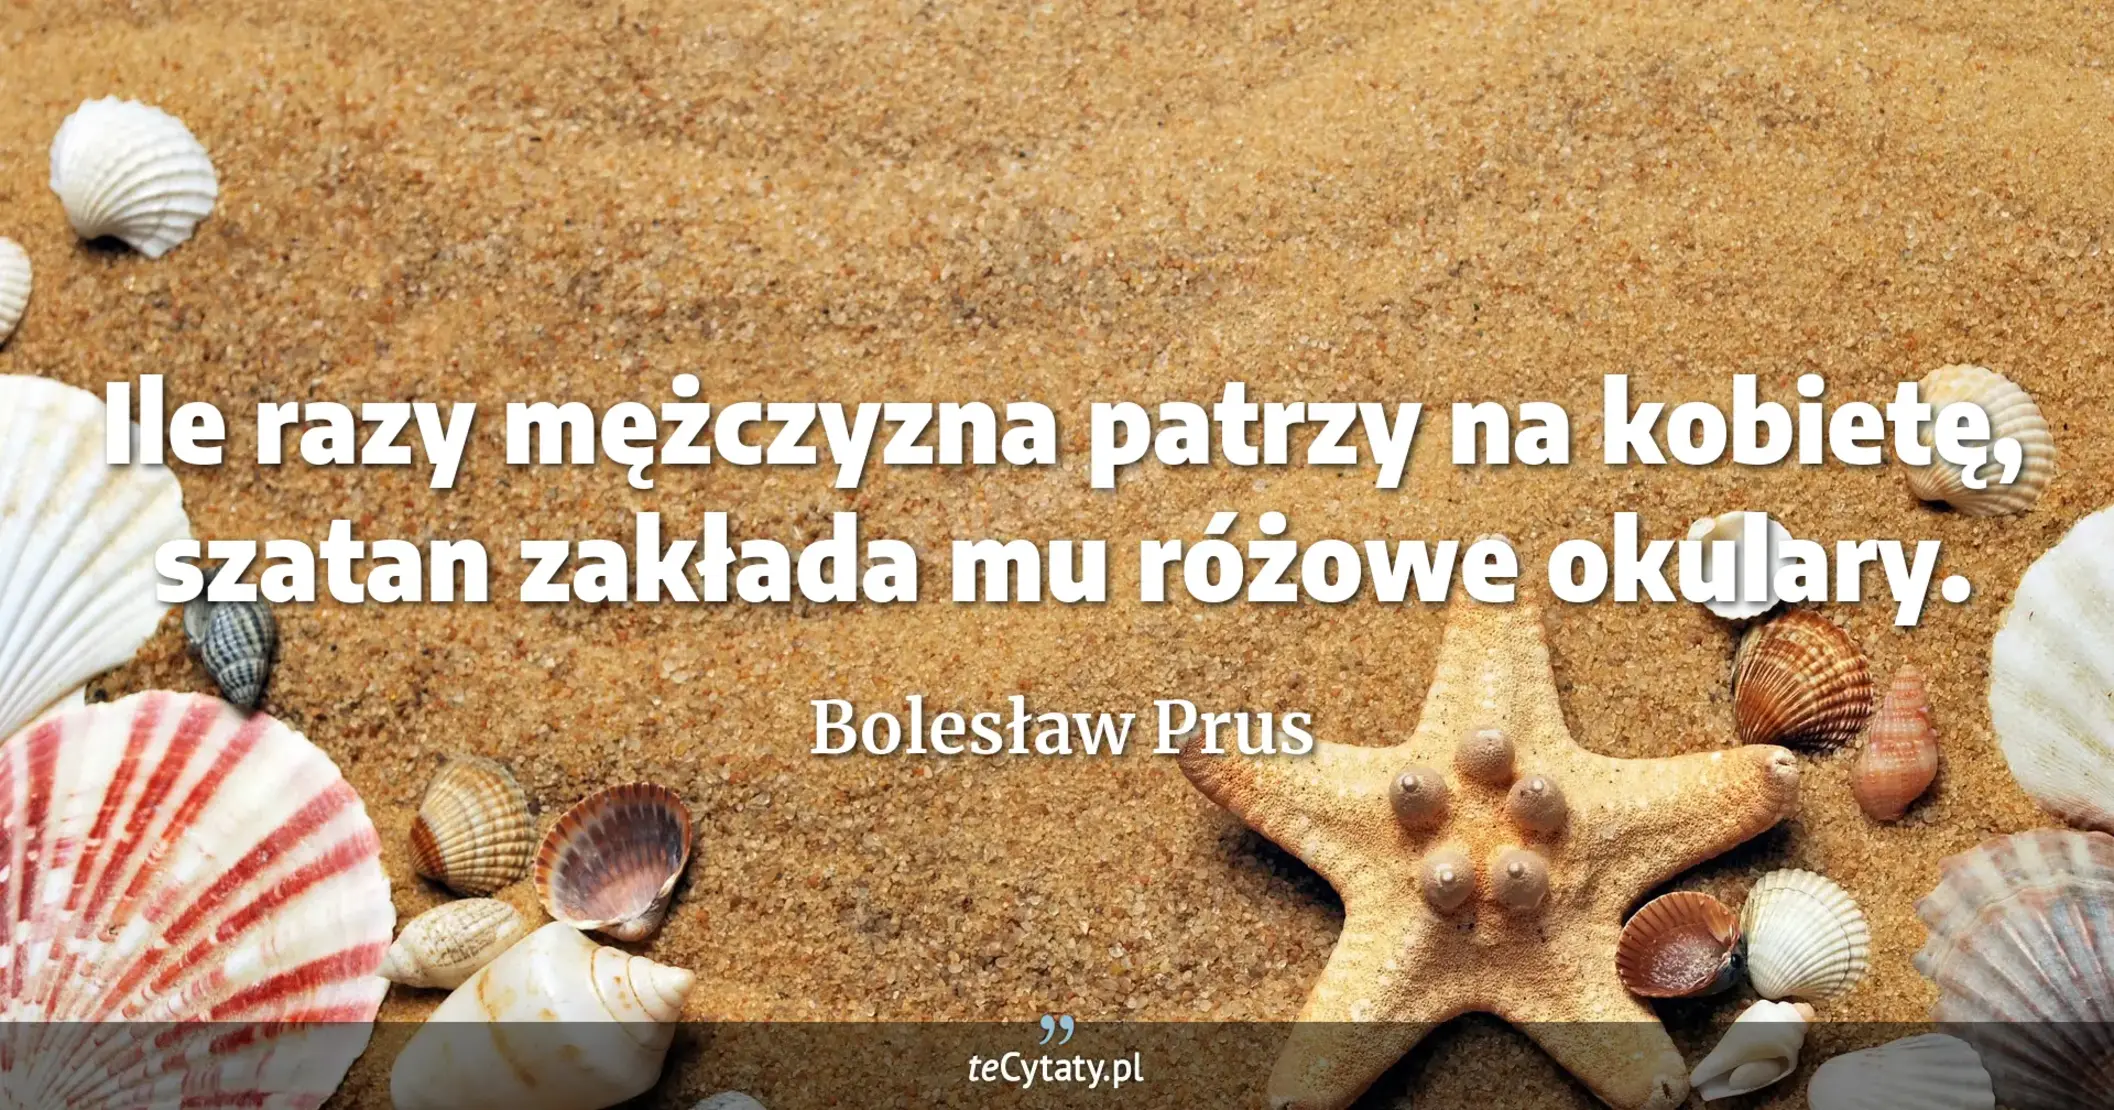 Ile razy mężczyzna patrzy na kobietę, szatan zakłada mu różowe okulary. - Bolesław Prus